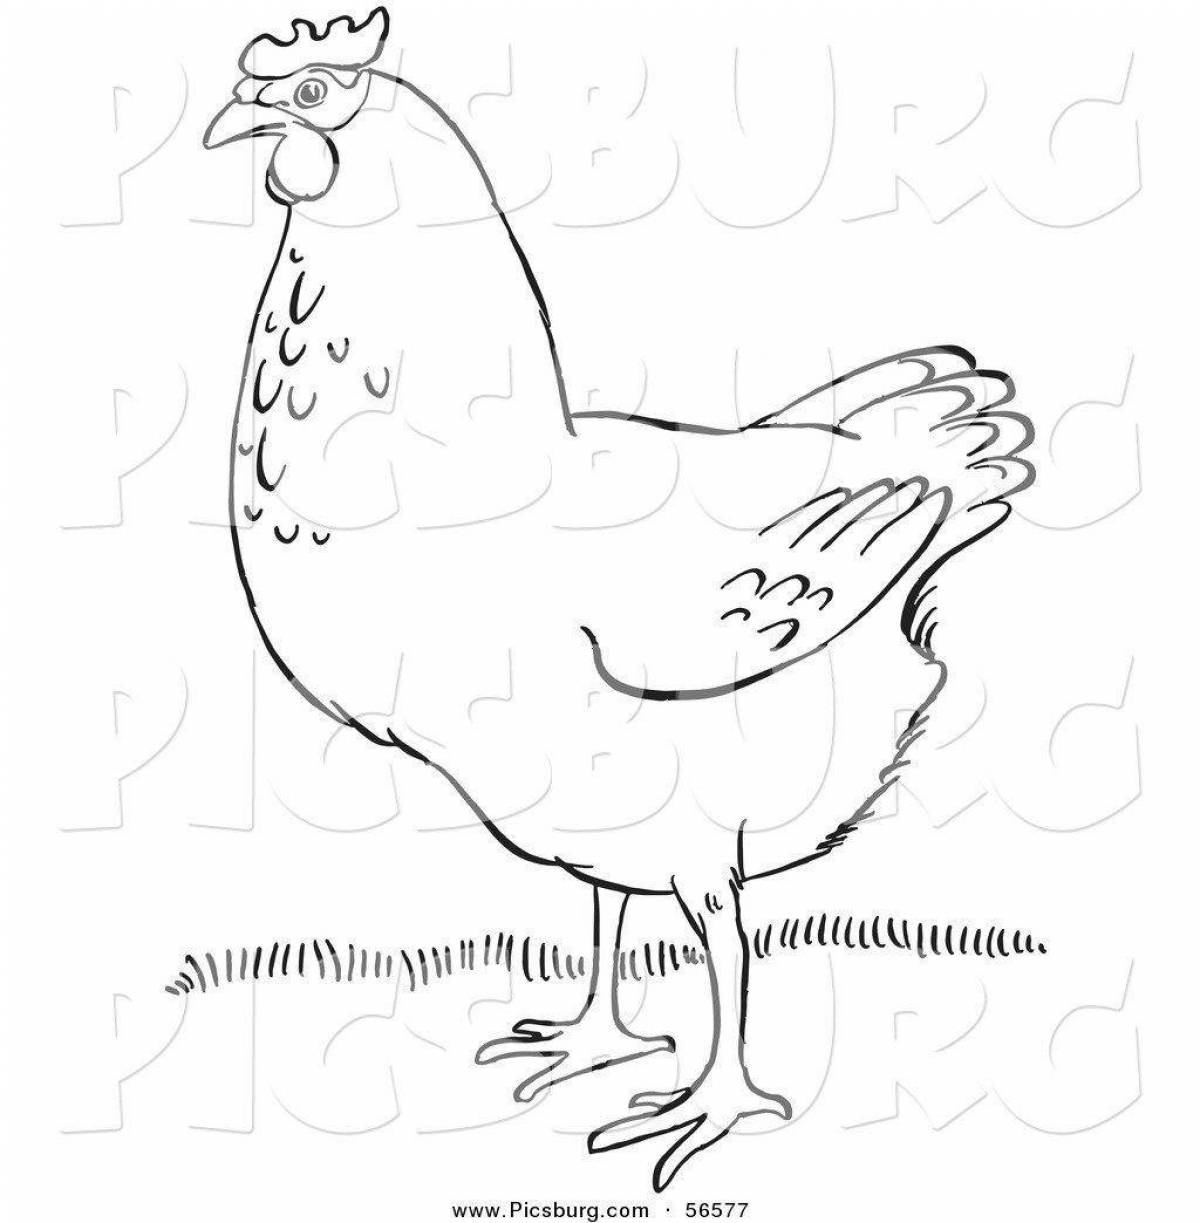 Чёрная курица или подземные жители рисунок курицы